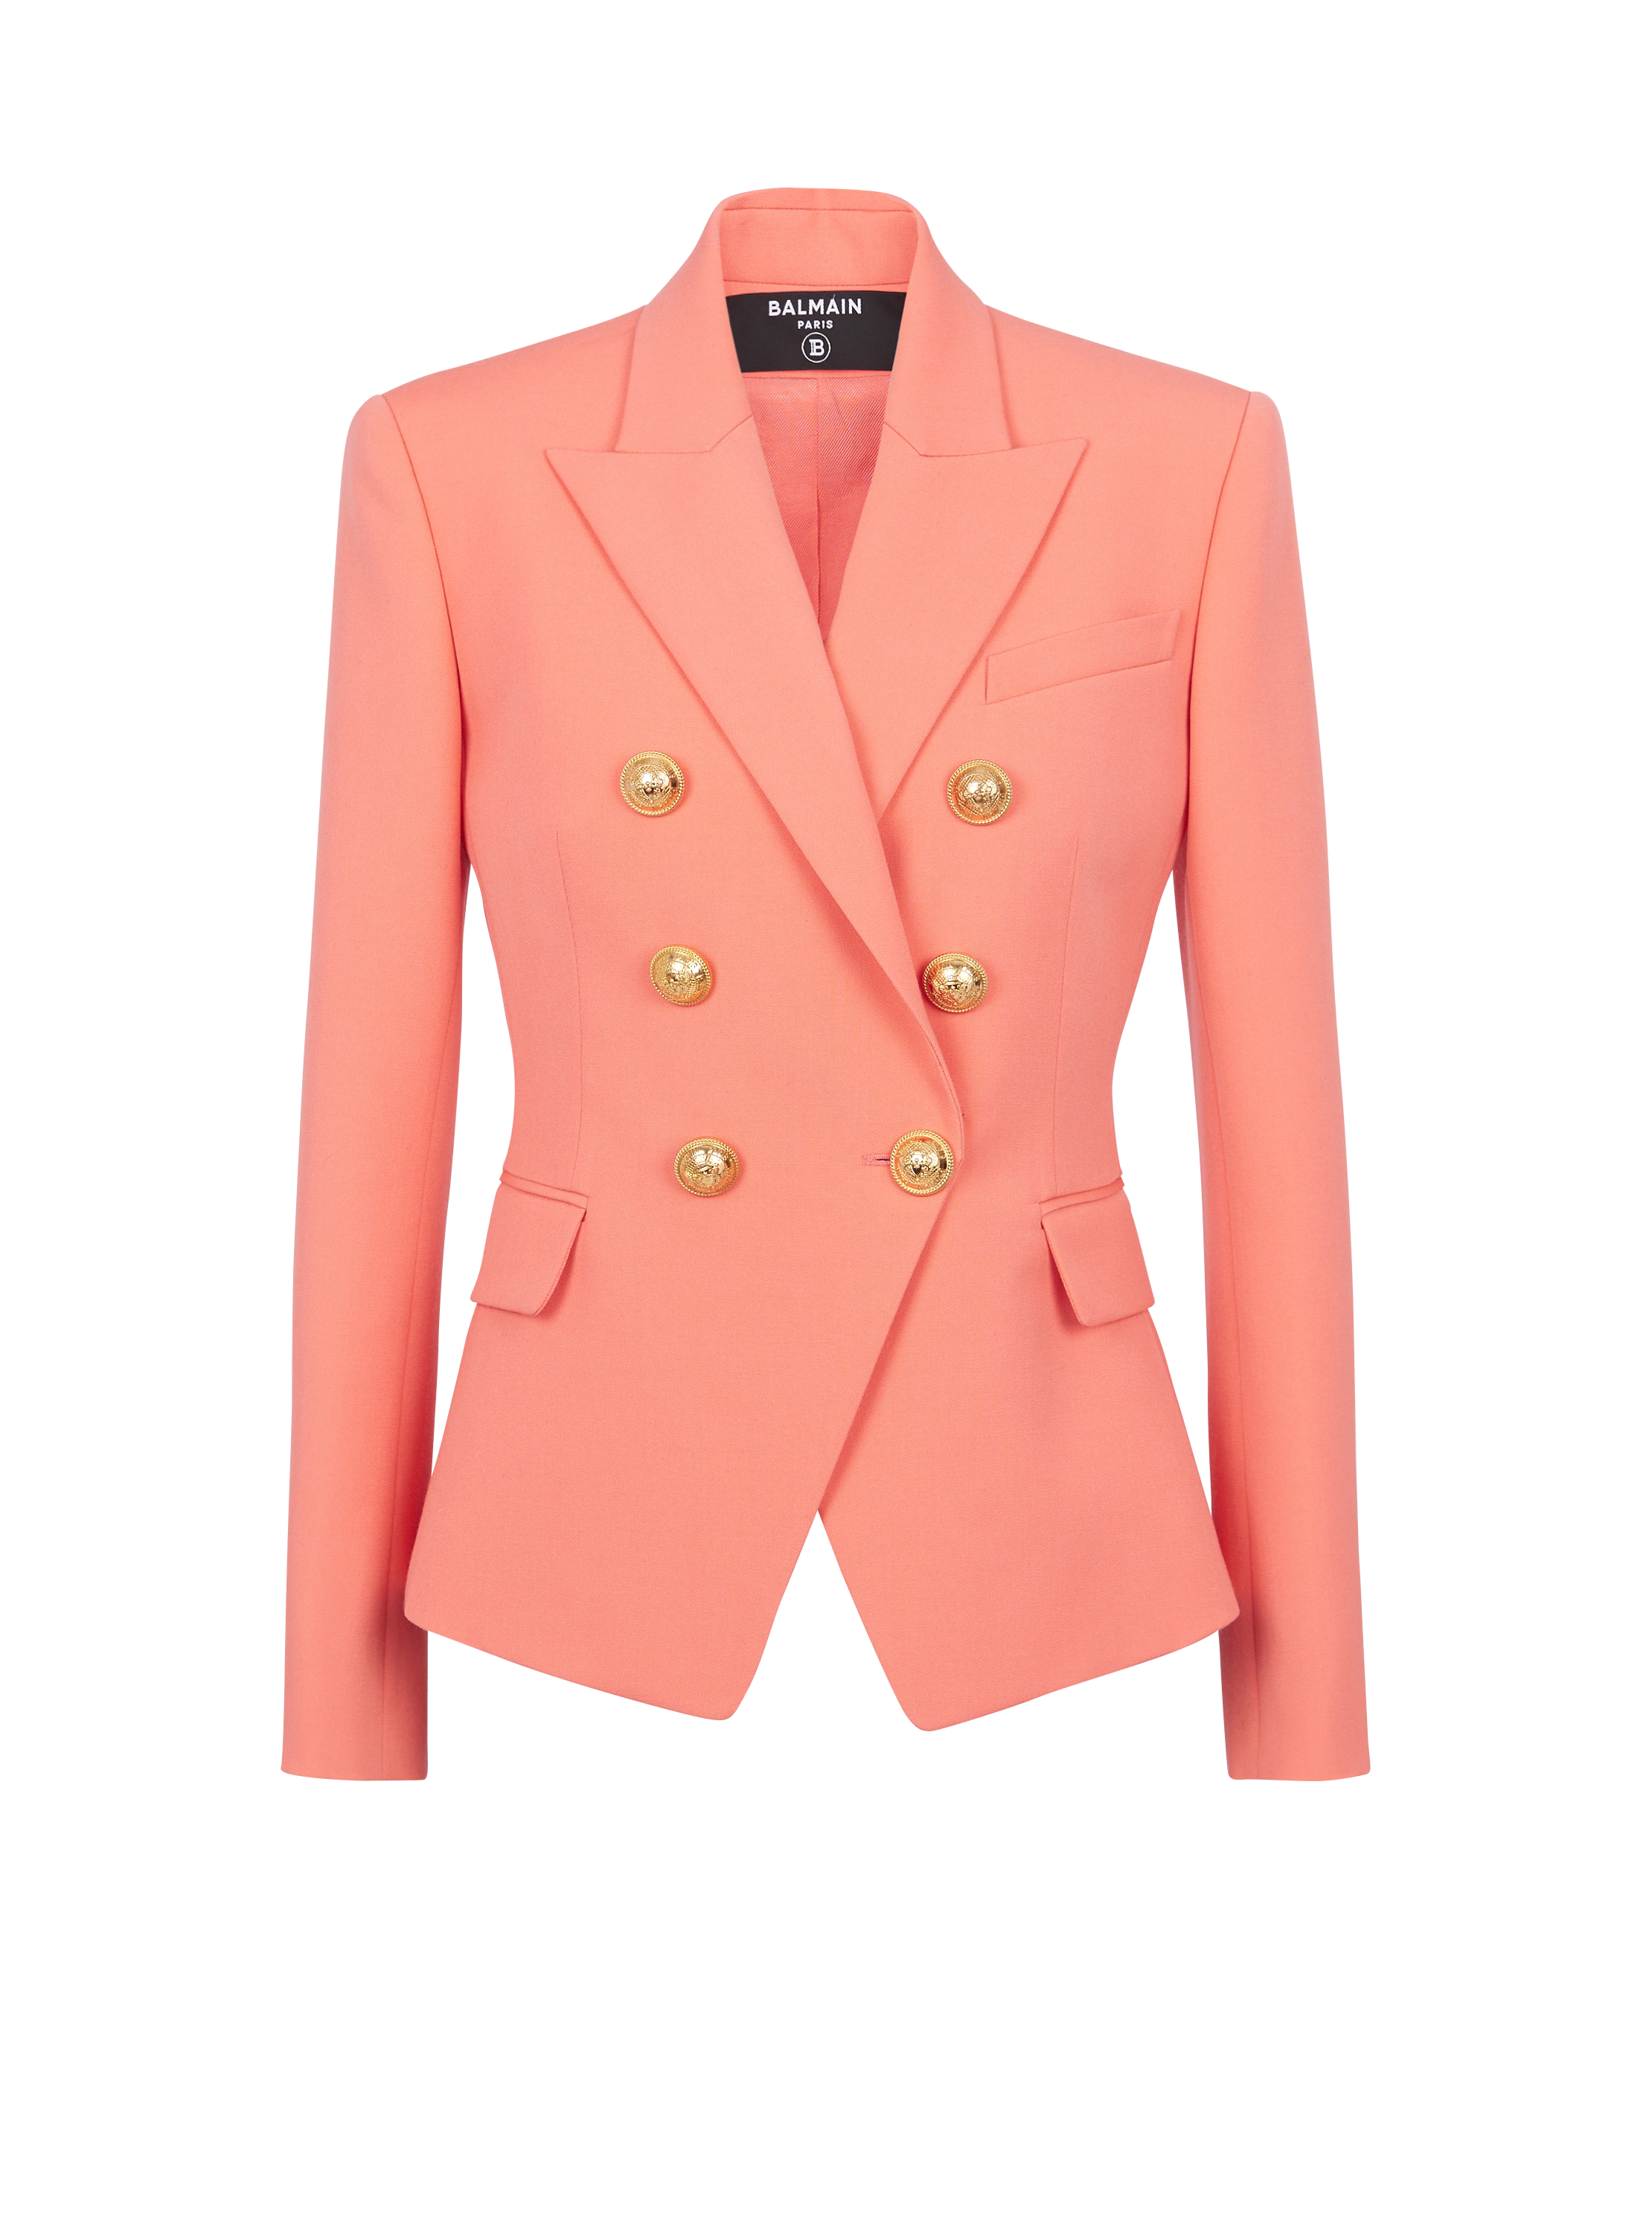 Klassische Jacke mit sechs Knöpfen, orange, hi-res